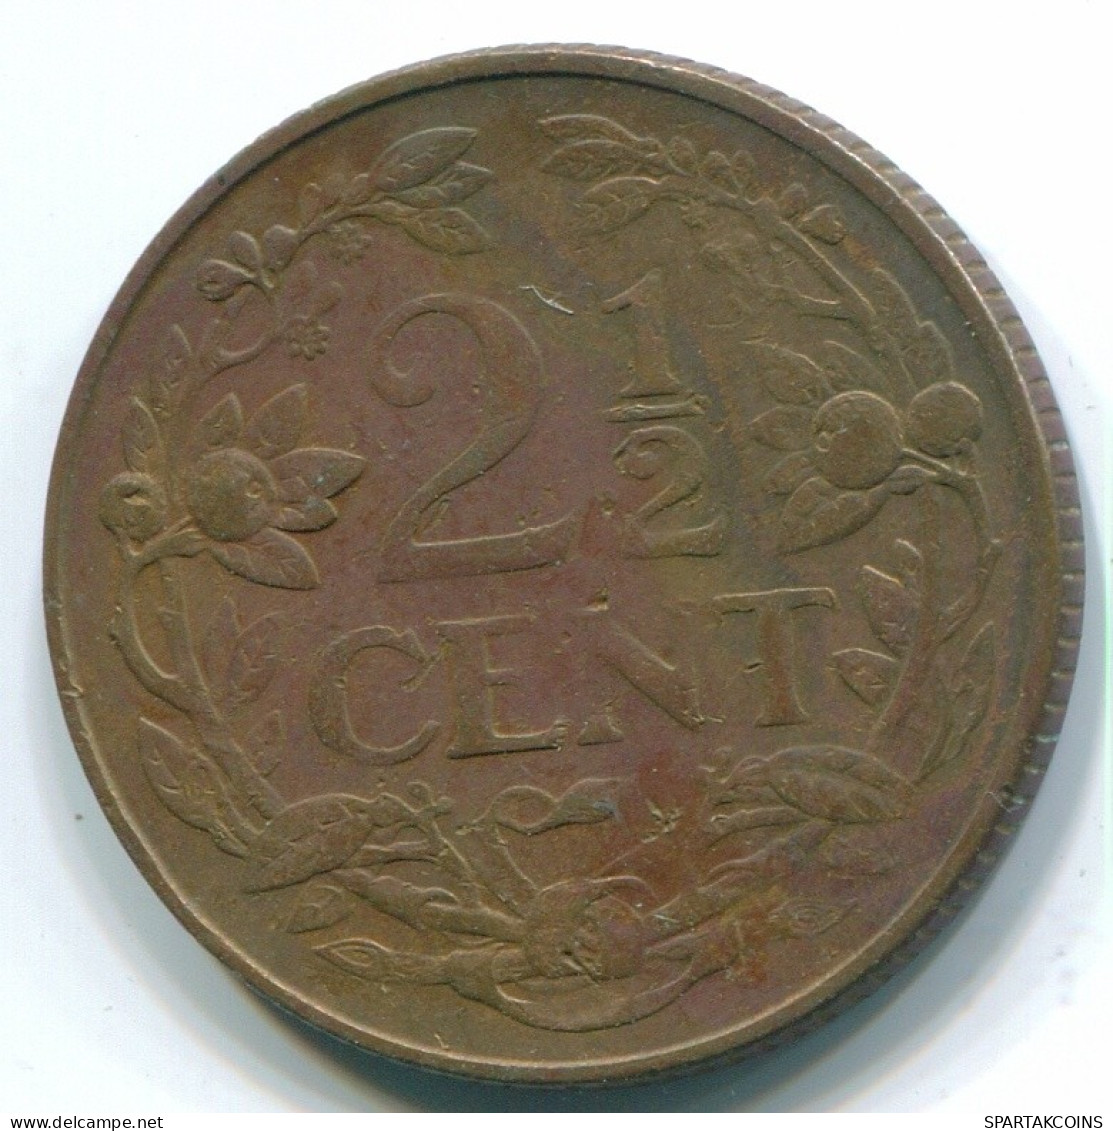 2 1/2 CENT 1965 CURACAO NIEDERLANDE Bronze Koloniale Münze #S10215.D.A - Curacao